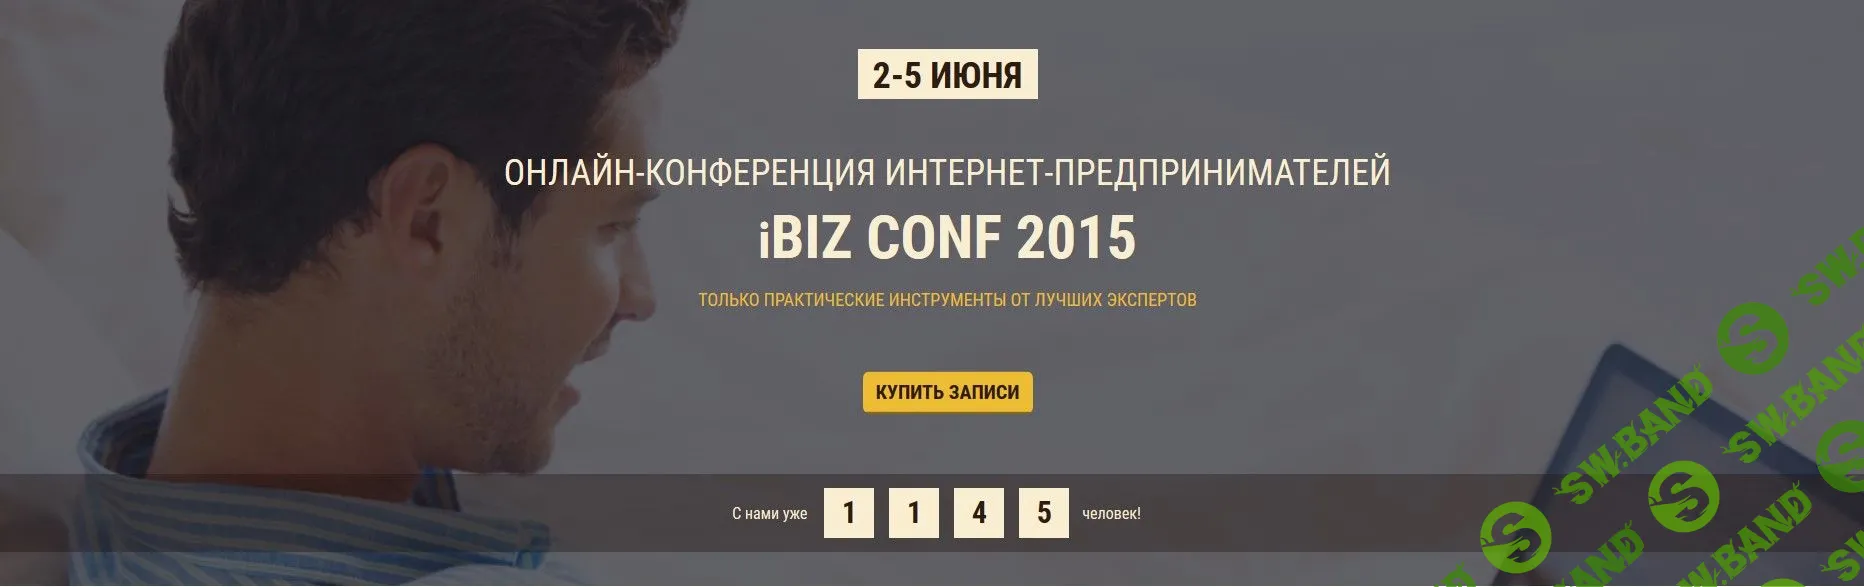 Онлайн-конференция интернет-предпринимателей iBIZ conf (2015)